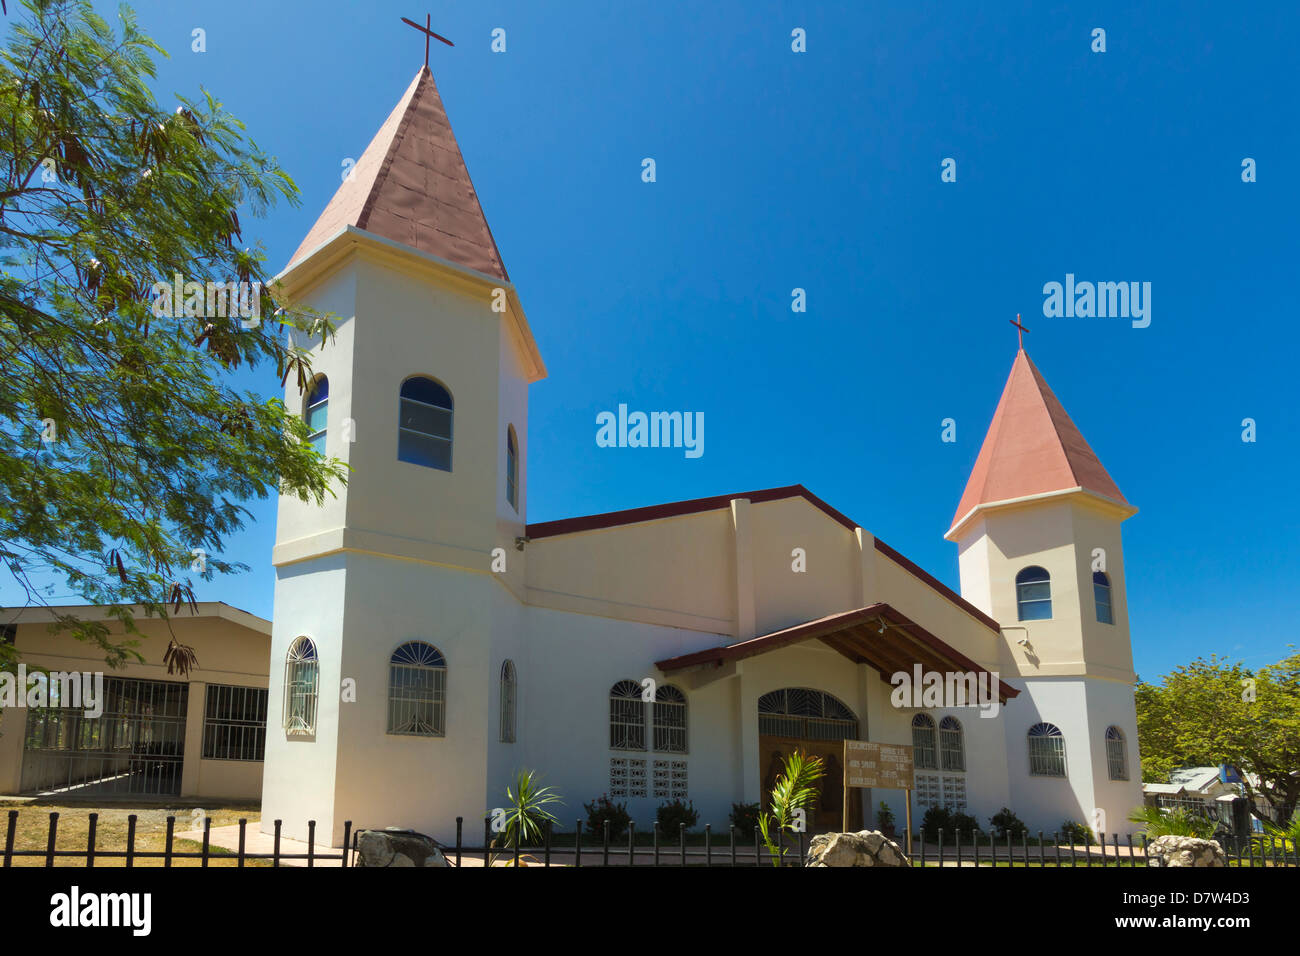 Deux tours, église au centre de ce village & resort, Samara, Province de Guanacaste, Péninsule de Nicoya, Costa Rica Banque D'Images